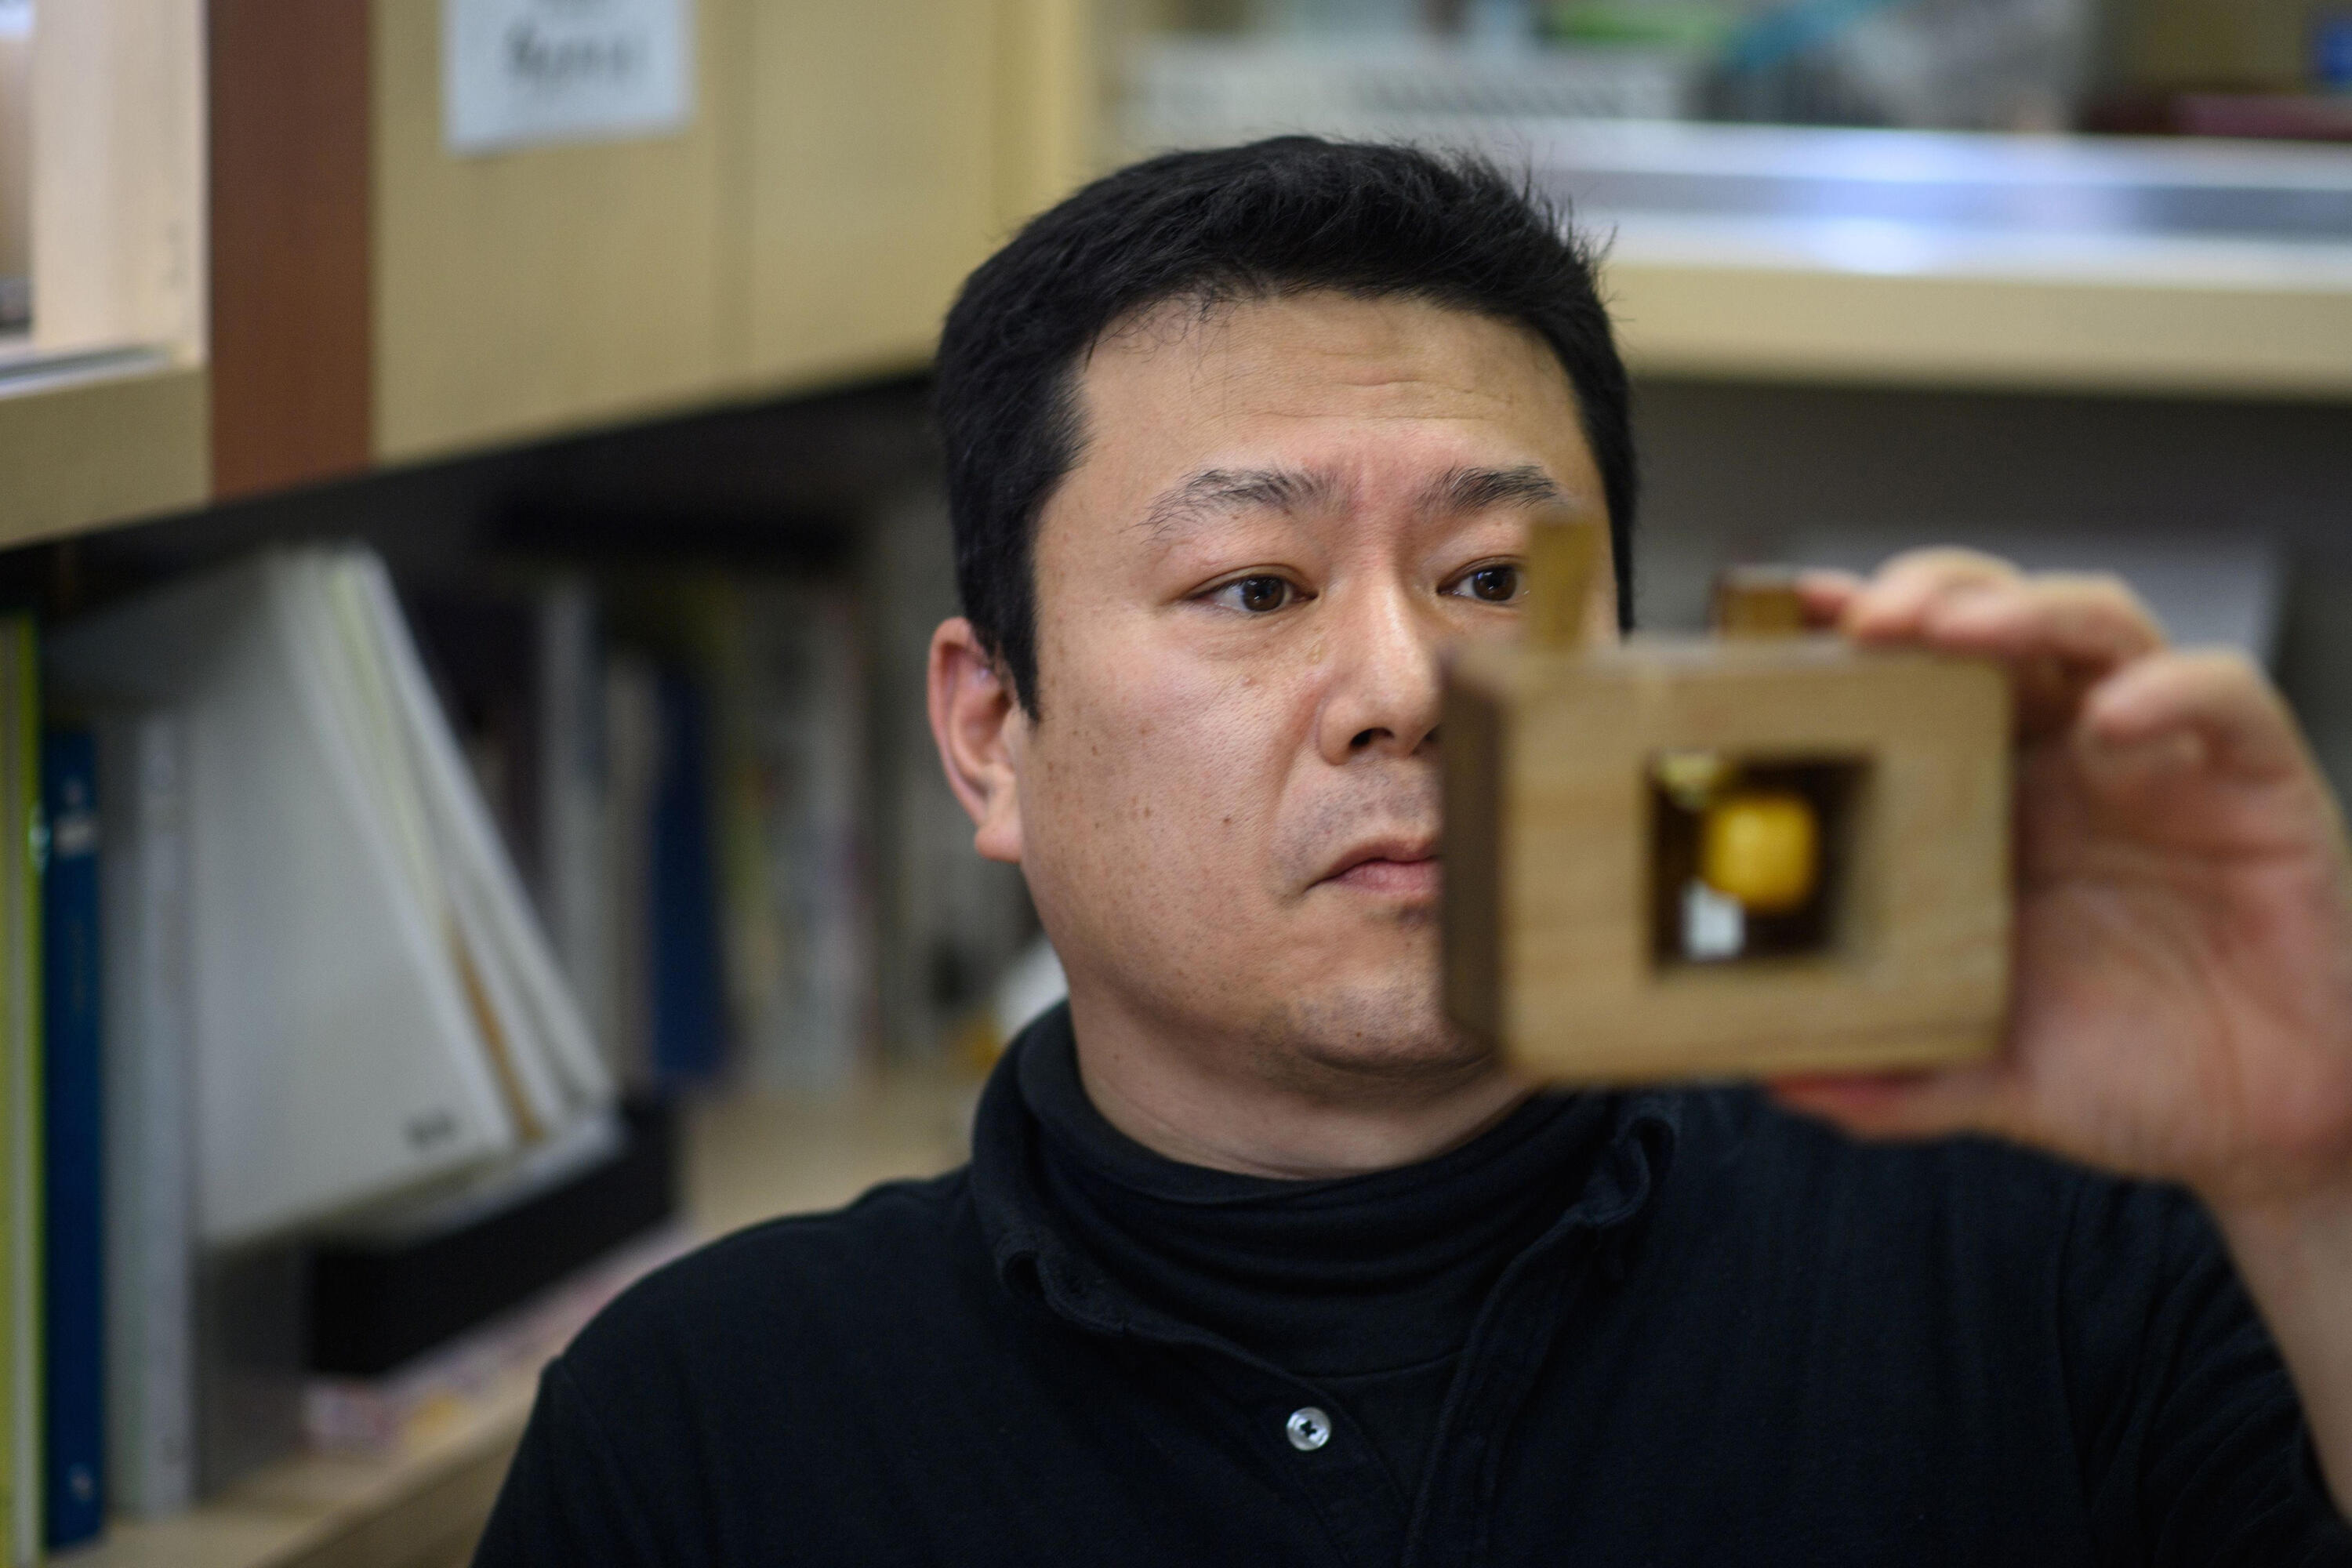 יפן חותמות הנקו טקהירו מקינו בעל מלאכה ש מכין חותמות (צילום: AFP)